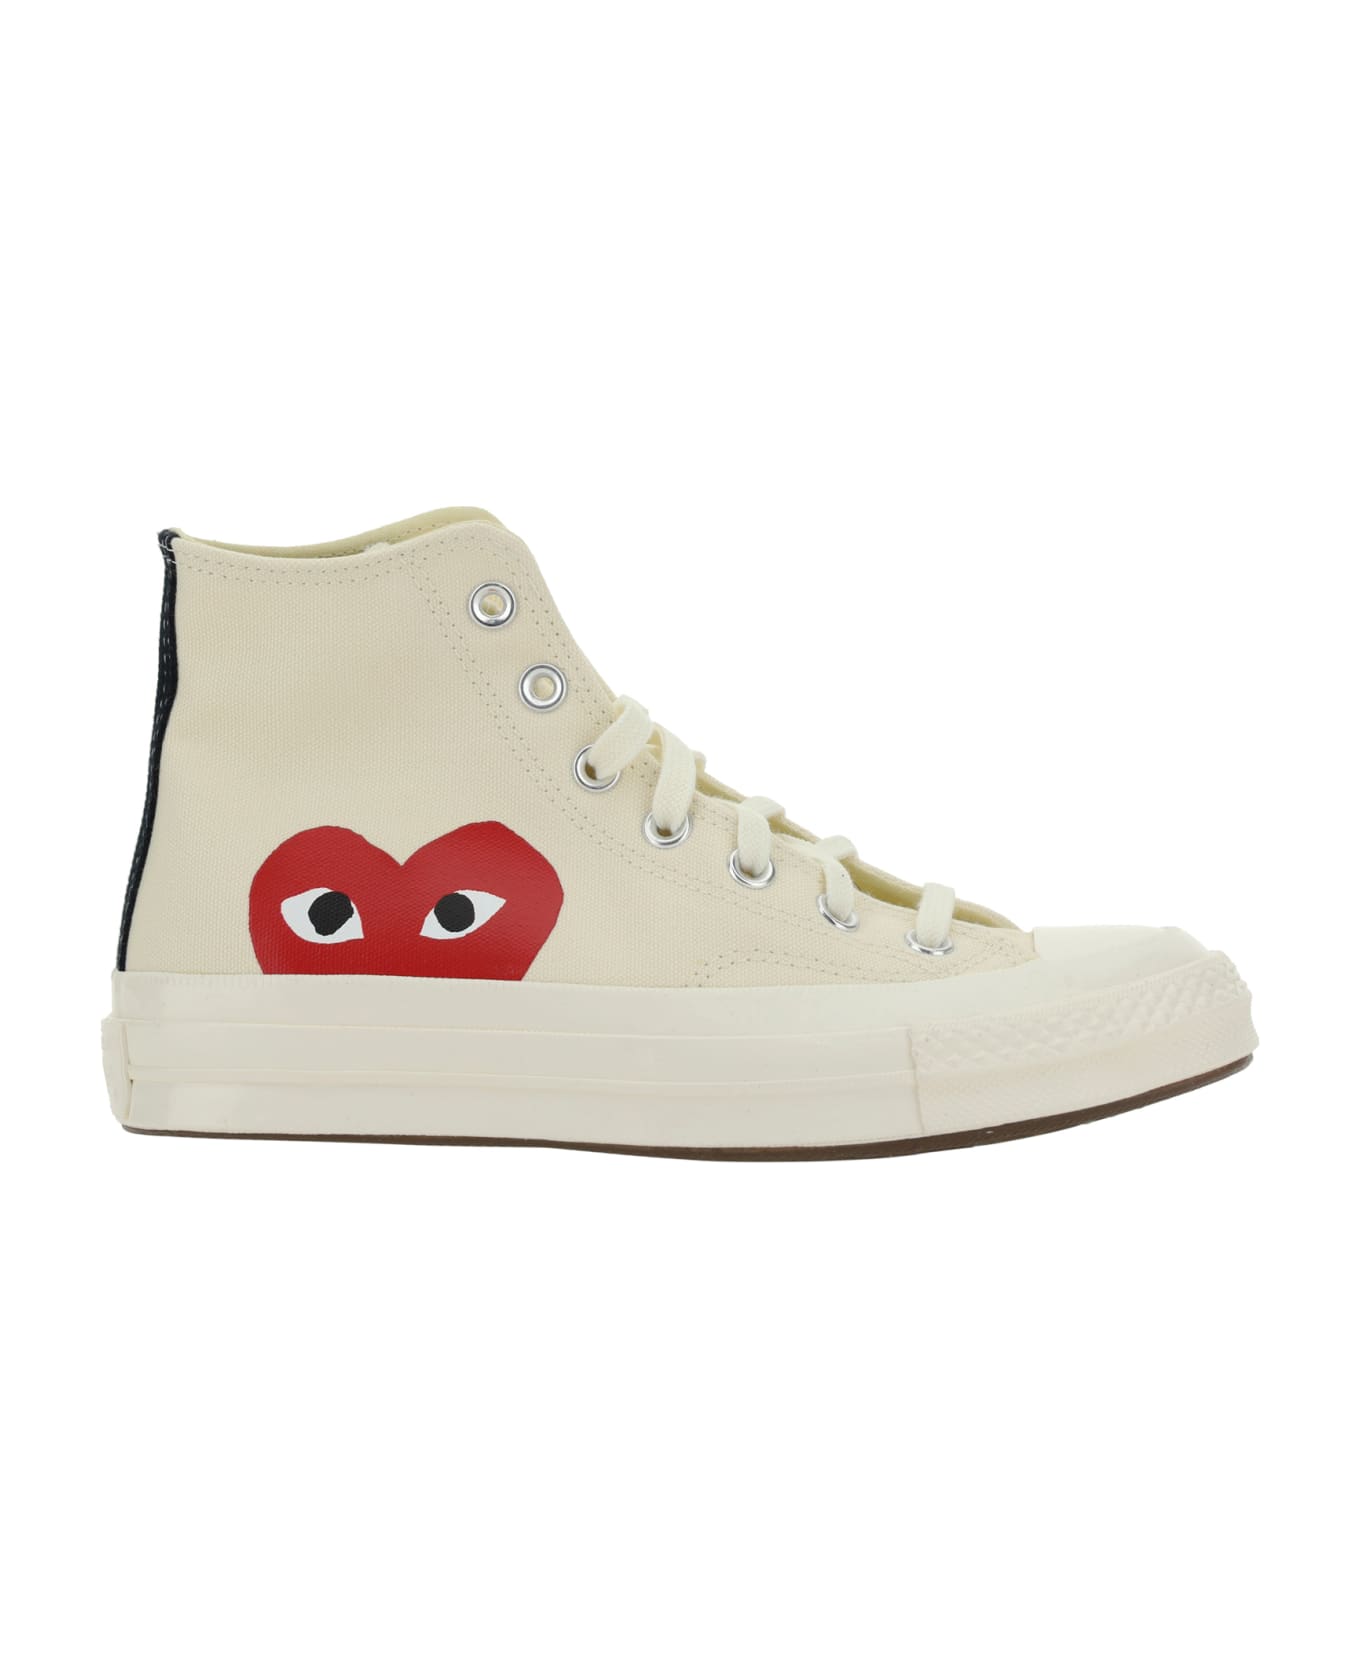 Versace des Garçons Play High Chuck Taylor Sneakers - White